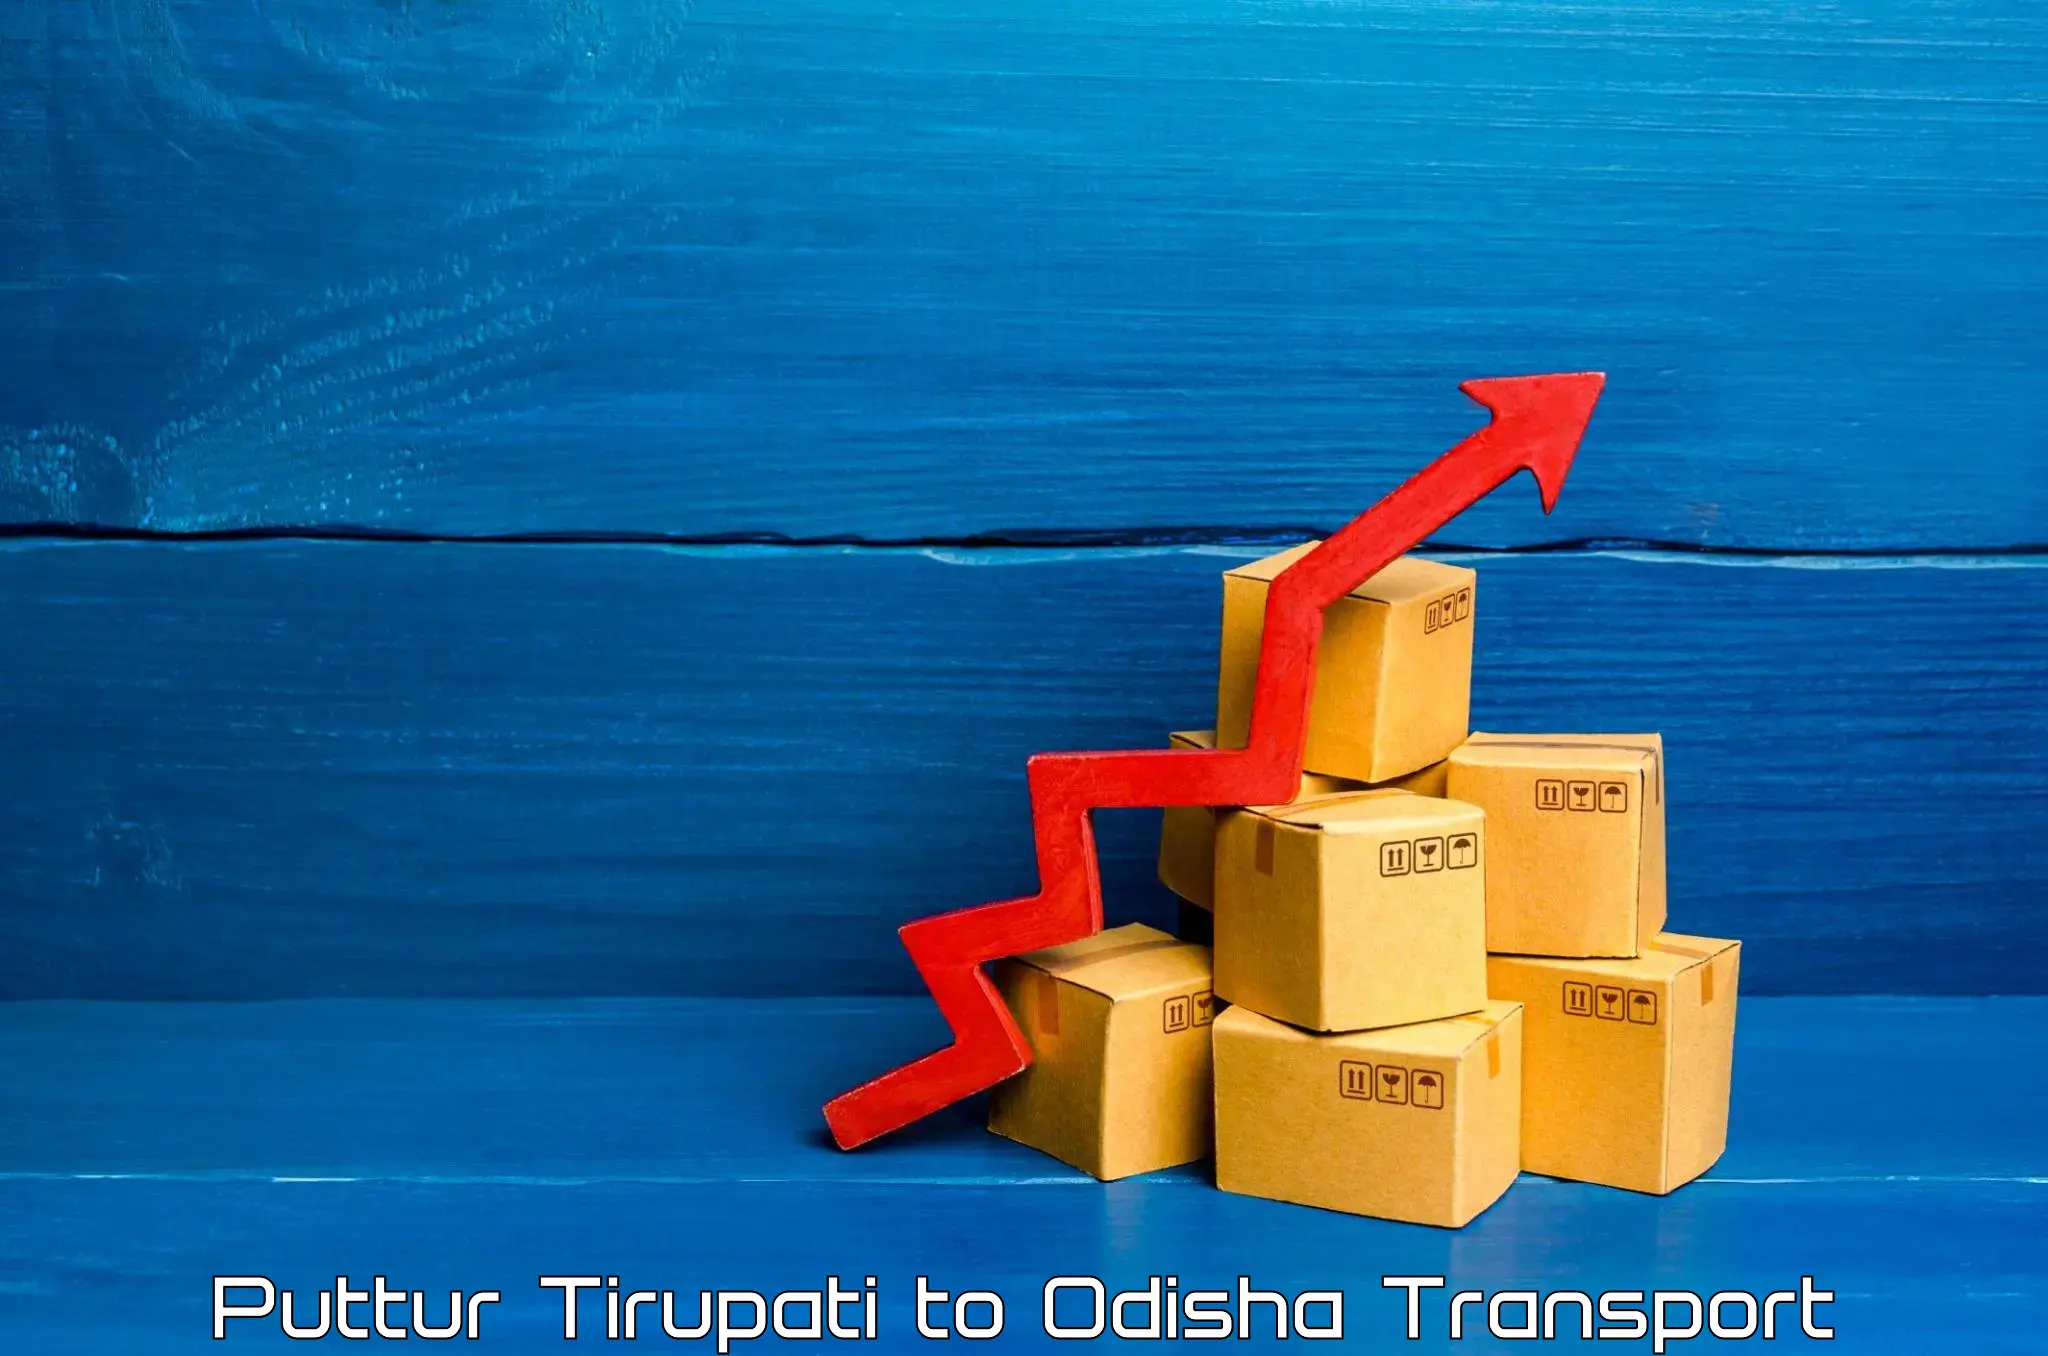 Parcel transport services Puttur Tirupati to Ganjam